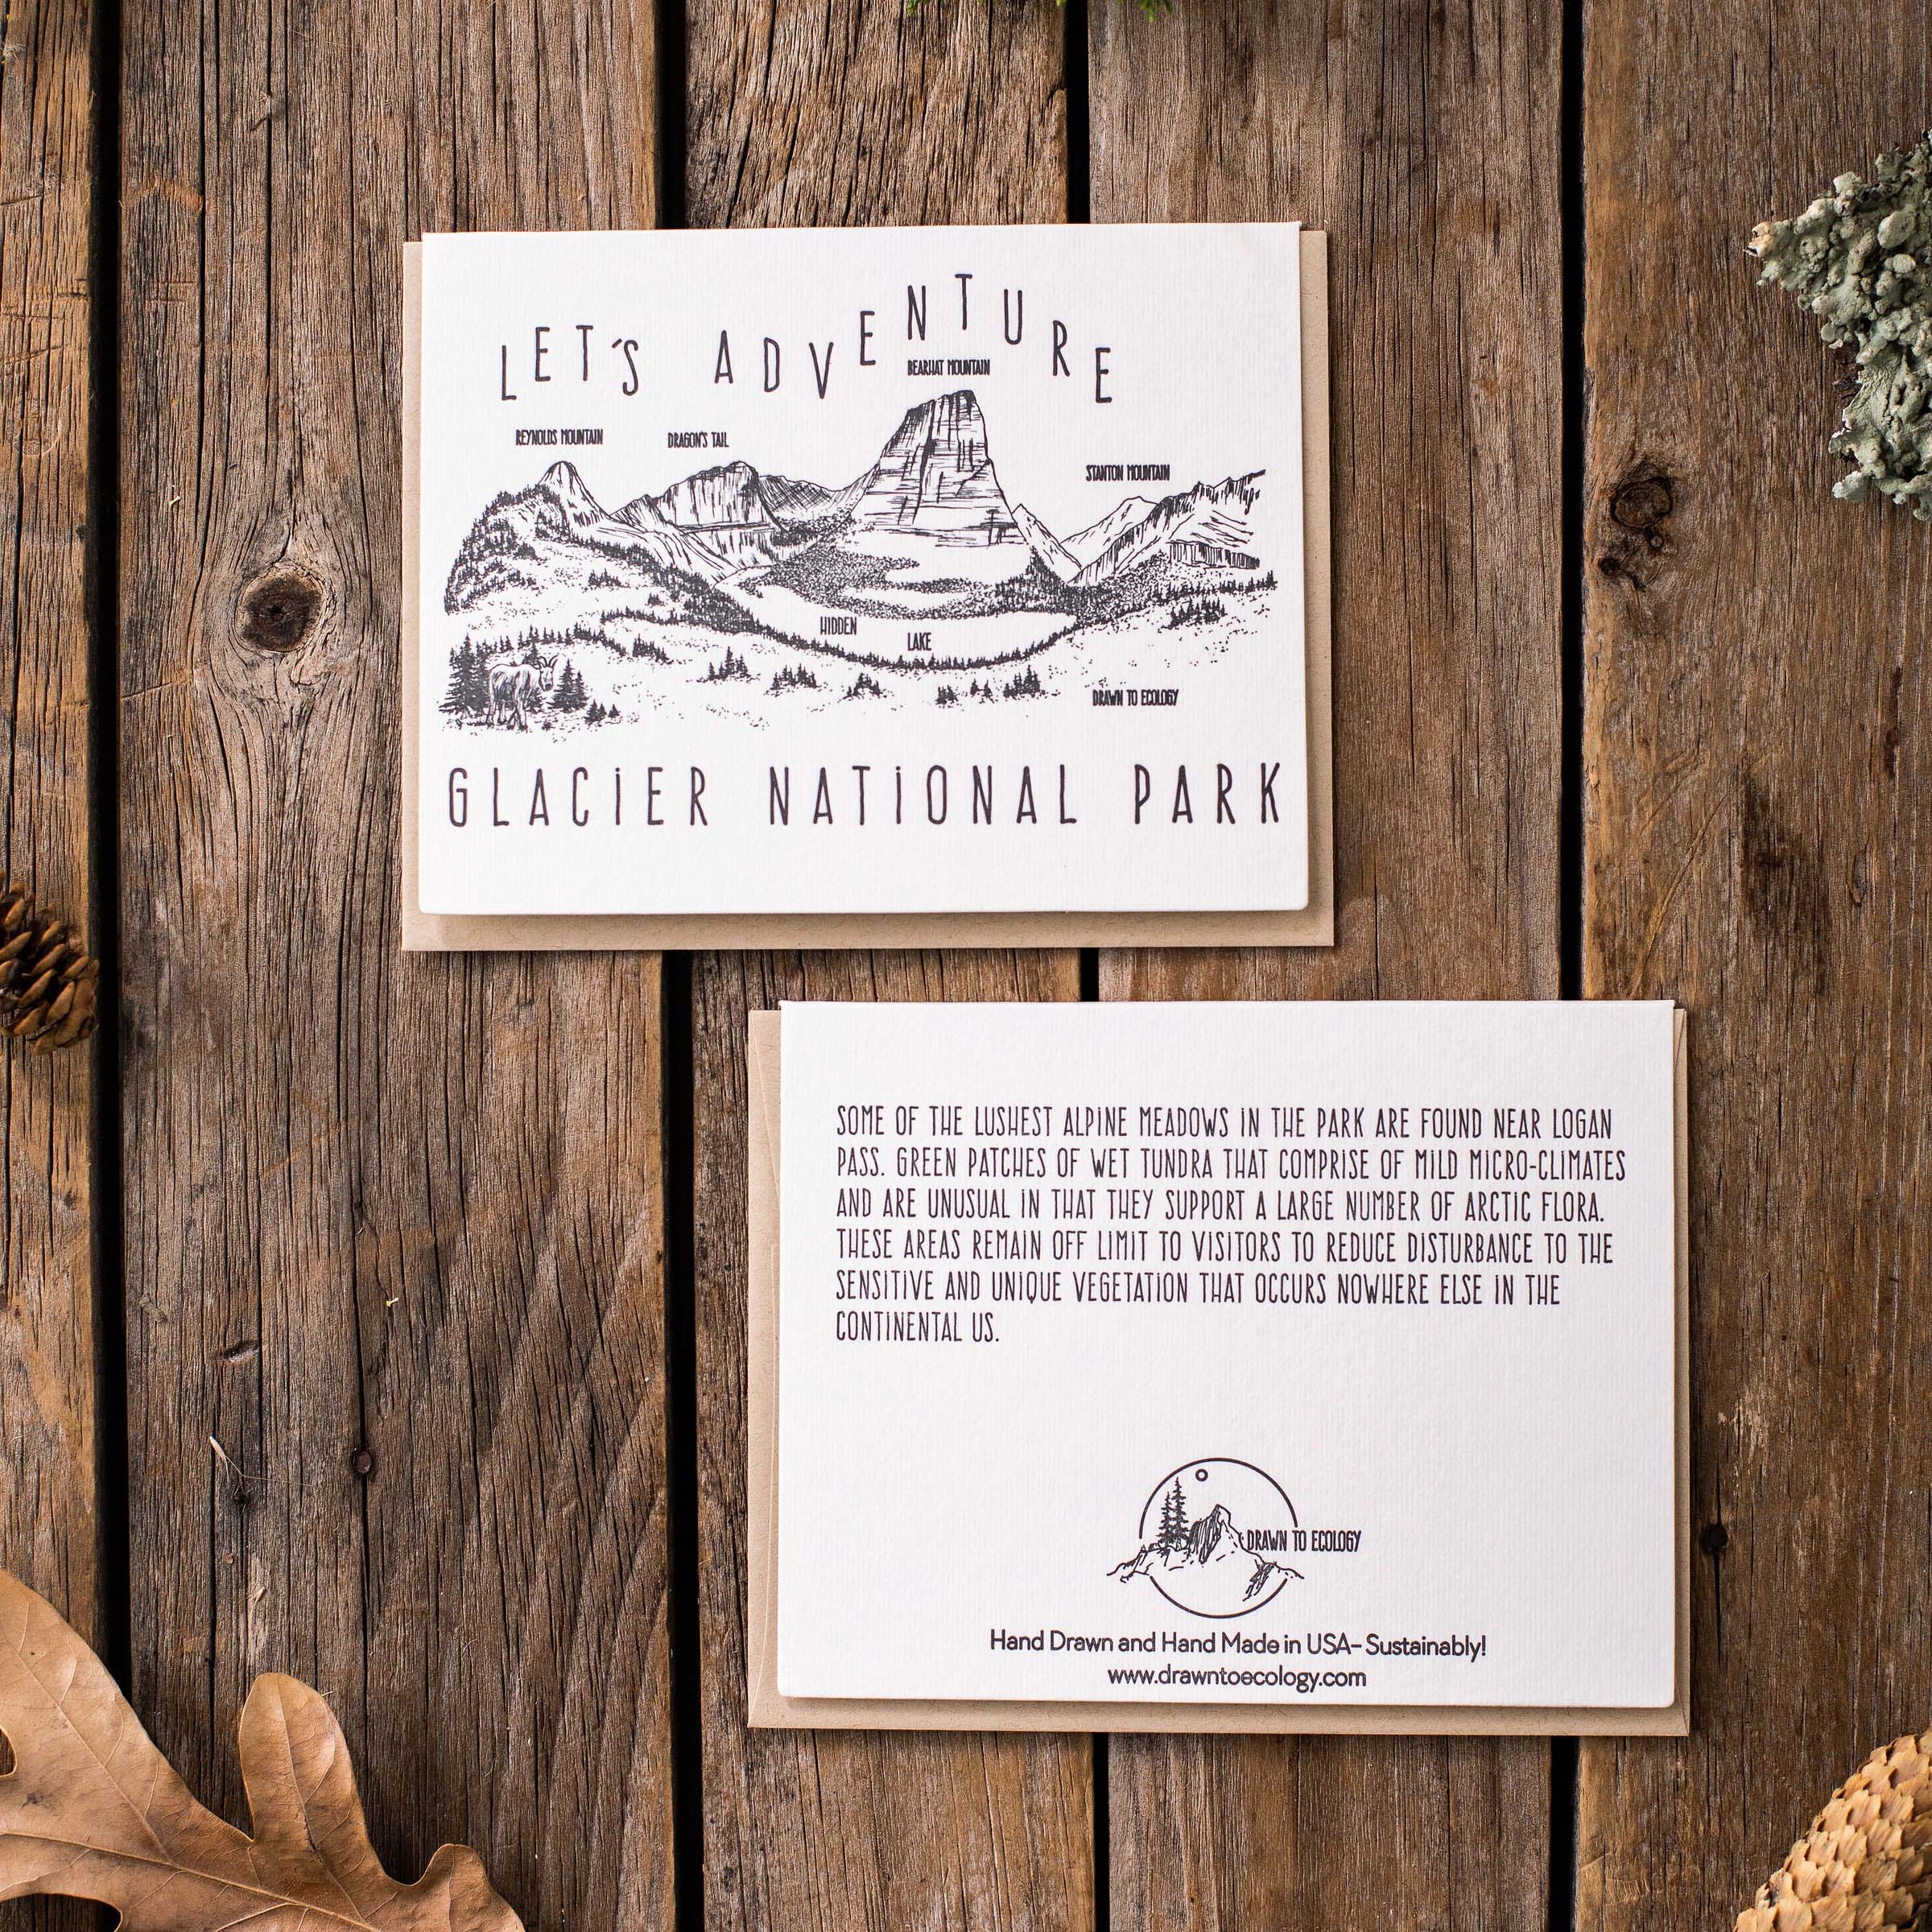 &#39;Let&#39;s Adventure&#39; Hidden Lake Glacier National Park Letterpress Card